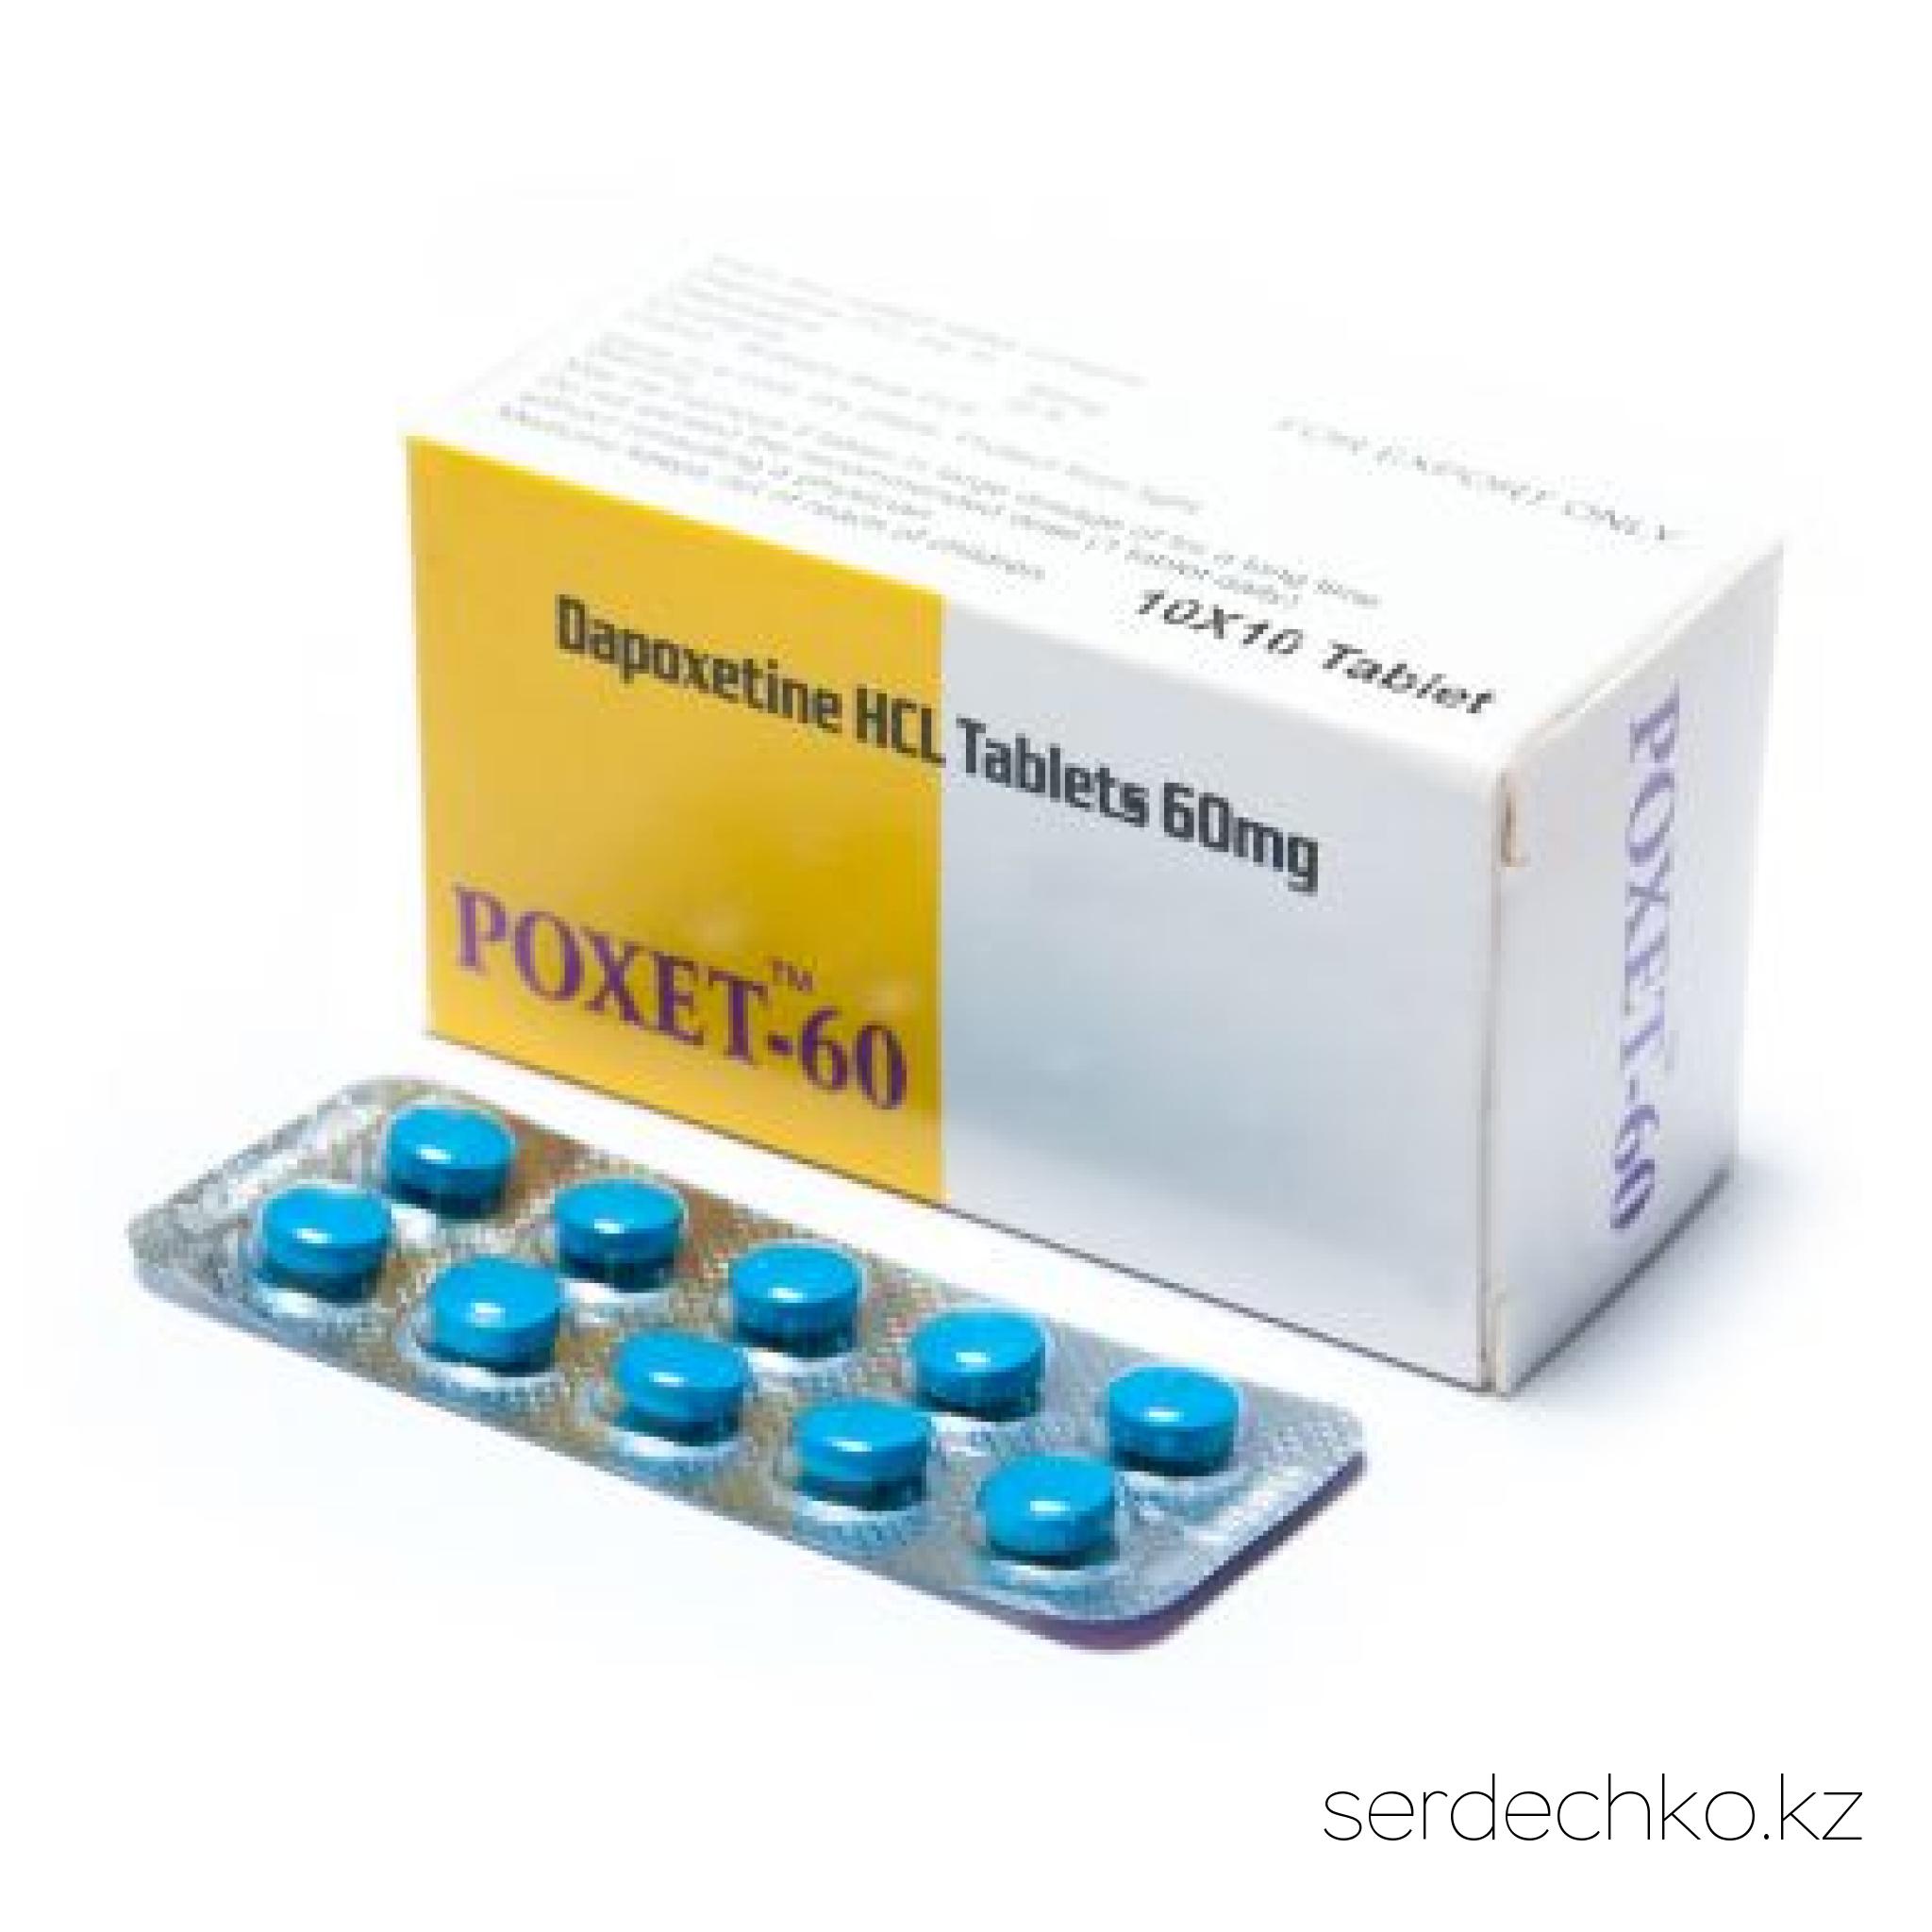 POXET 60 мг, 
	Дапоксетин 60 мг - описание препарата (дженерика)

	Дапоксетин 60 mg – назначается мужчинам со слабой потенцией, страдающим преждевременным семяизвержением. Относится к категории пролонгаторов эрекции, которые задерживают наступление оргазма.

	Главное действующее вещество Дапоксетина – dapoxetine. Вещество работает в мозгу, блокируя выработку серотонина, что уменьшает чувствительность нервных окончаний в области промежности. Это и способствует задержке эякуляции.

	Краткое описание препарата

	
		выпускается в виде таблеток для приема внутрь;
	
		в состав препарата входит дапоксетин – ингибитор серотонина (гормона счастья);
	
		работает уже после первого применения;
	
		эффект заметен через полчаса-час после применения и сохраняется 4-5 часов;
	
		повышает мужскую потенцию, эффективно борясь с эректильной дисфункцией;
	
		совместим с любыми стимуляторами потенции (Виагрой, Сиалисом, Левитрой);
	
		Дапоксетин 60 мг – индийский дженерик, качественный аналог оригинала с идентичным составом, дозировкой и формой выпуска.


	С Дапоксетином 60 мг длительный и качественный половой акт – реальность в любом возрасте!

	Инструкция по применению POXET 60 mg

	Стандартная дозировка: 60 мг dapoxetine в сутки, что эквивалентно 1 таб Дапоксетина 60 мг. Указанная доза может меняться в индивидуальном порядке на усмотрение врача. Оптимальную дозировку подберет только узкопрофильный специалист, учитывая возраст и состояние здоровья пациента, а также степень развития импотенции.

	Как принимать: 1 шт Дапоксетина нужно принять внутрь непосредственно перед половым контактом, запивая обычной негазированной водой.

	Время приема: лекарство пьют за час или два до интимной близости.

	Период выведения: вещество dapoxetine выводится из организма кишечником и почками. Общее время выведения составляет 4-5 часов.

	Перед использованием таблеток необходимо ознакомиться с инструкцией к применению и проконсультироваться с врачом.

	Когда начинается действие

	Дапоксетин 60 мг – эффективный препарат со стабильным эффектом. Действие препарата наступает через час после орального применения и сохраняется 6 часов. За это время мужчина может иметь много успешных продолжительных половых актов. Пик действия препарата происходит через 3 часа после использования. Реакция на прием дапоксетина возможна только при наличии хорошей природной (естественной) сексуальной стимуляции.

	 
